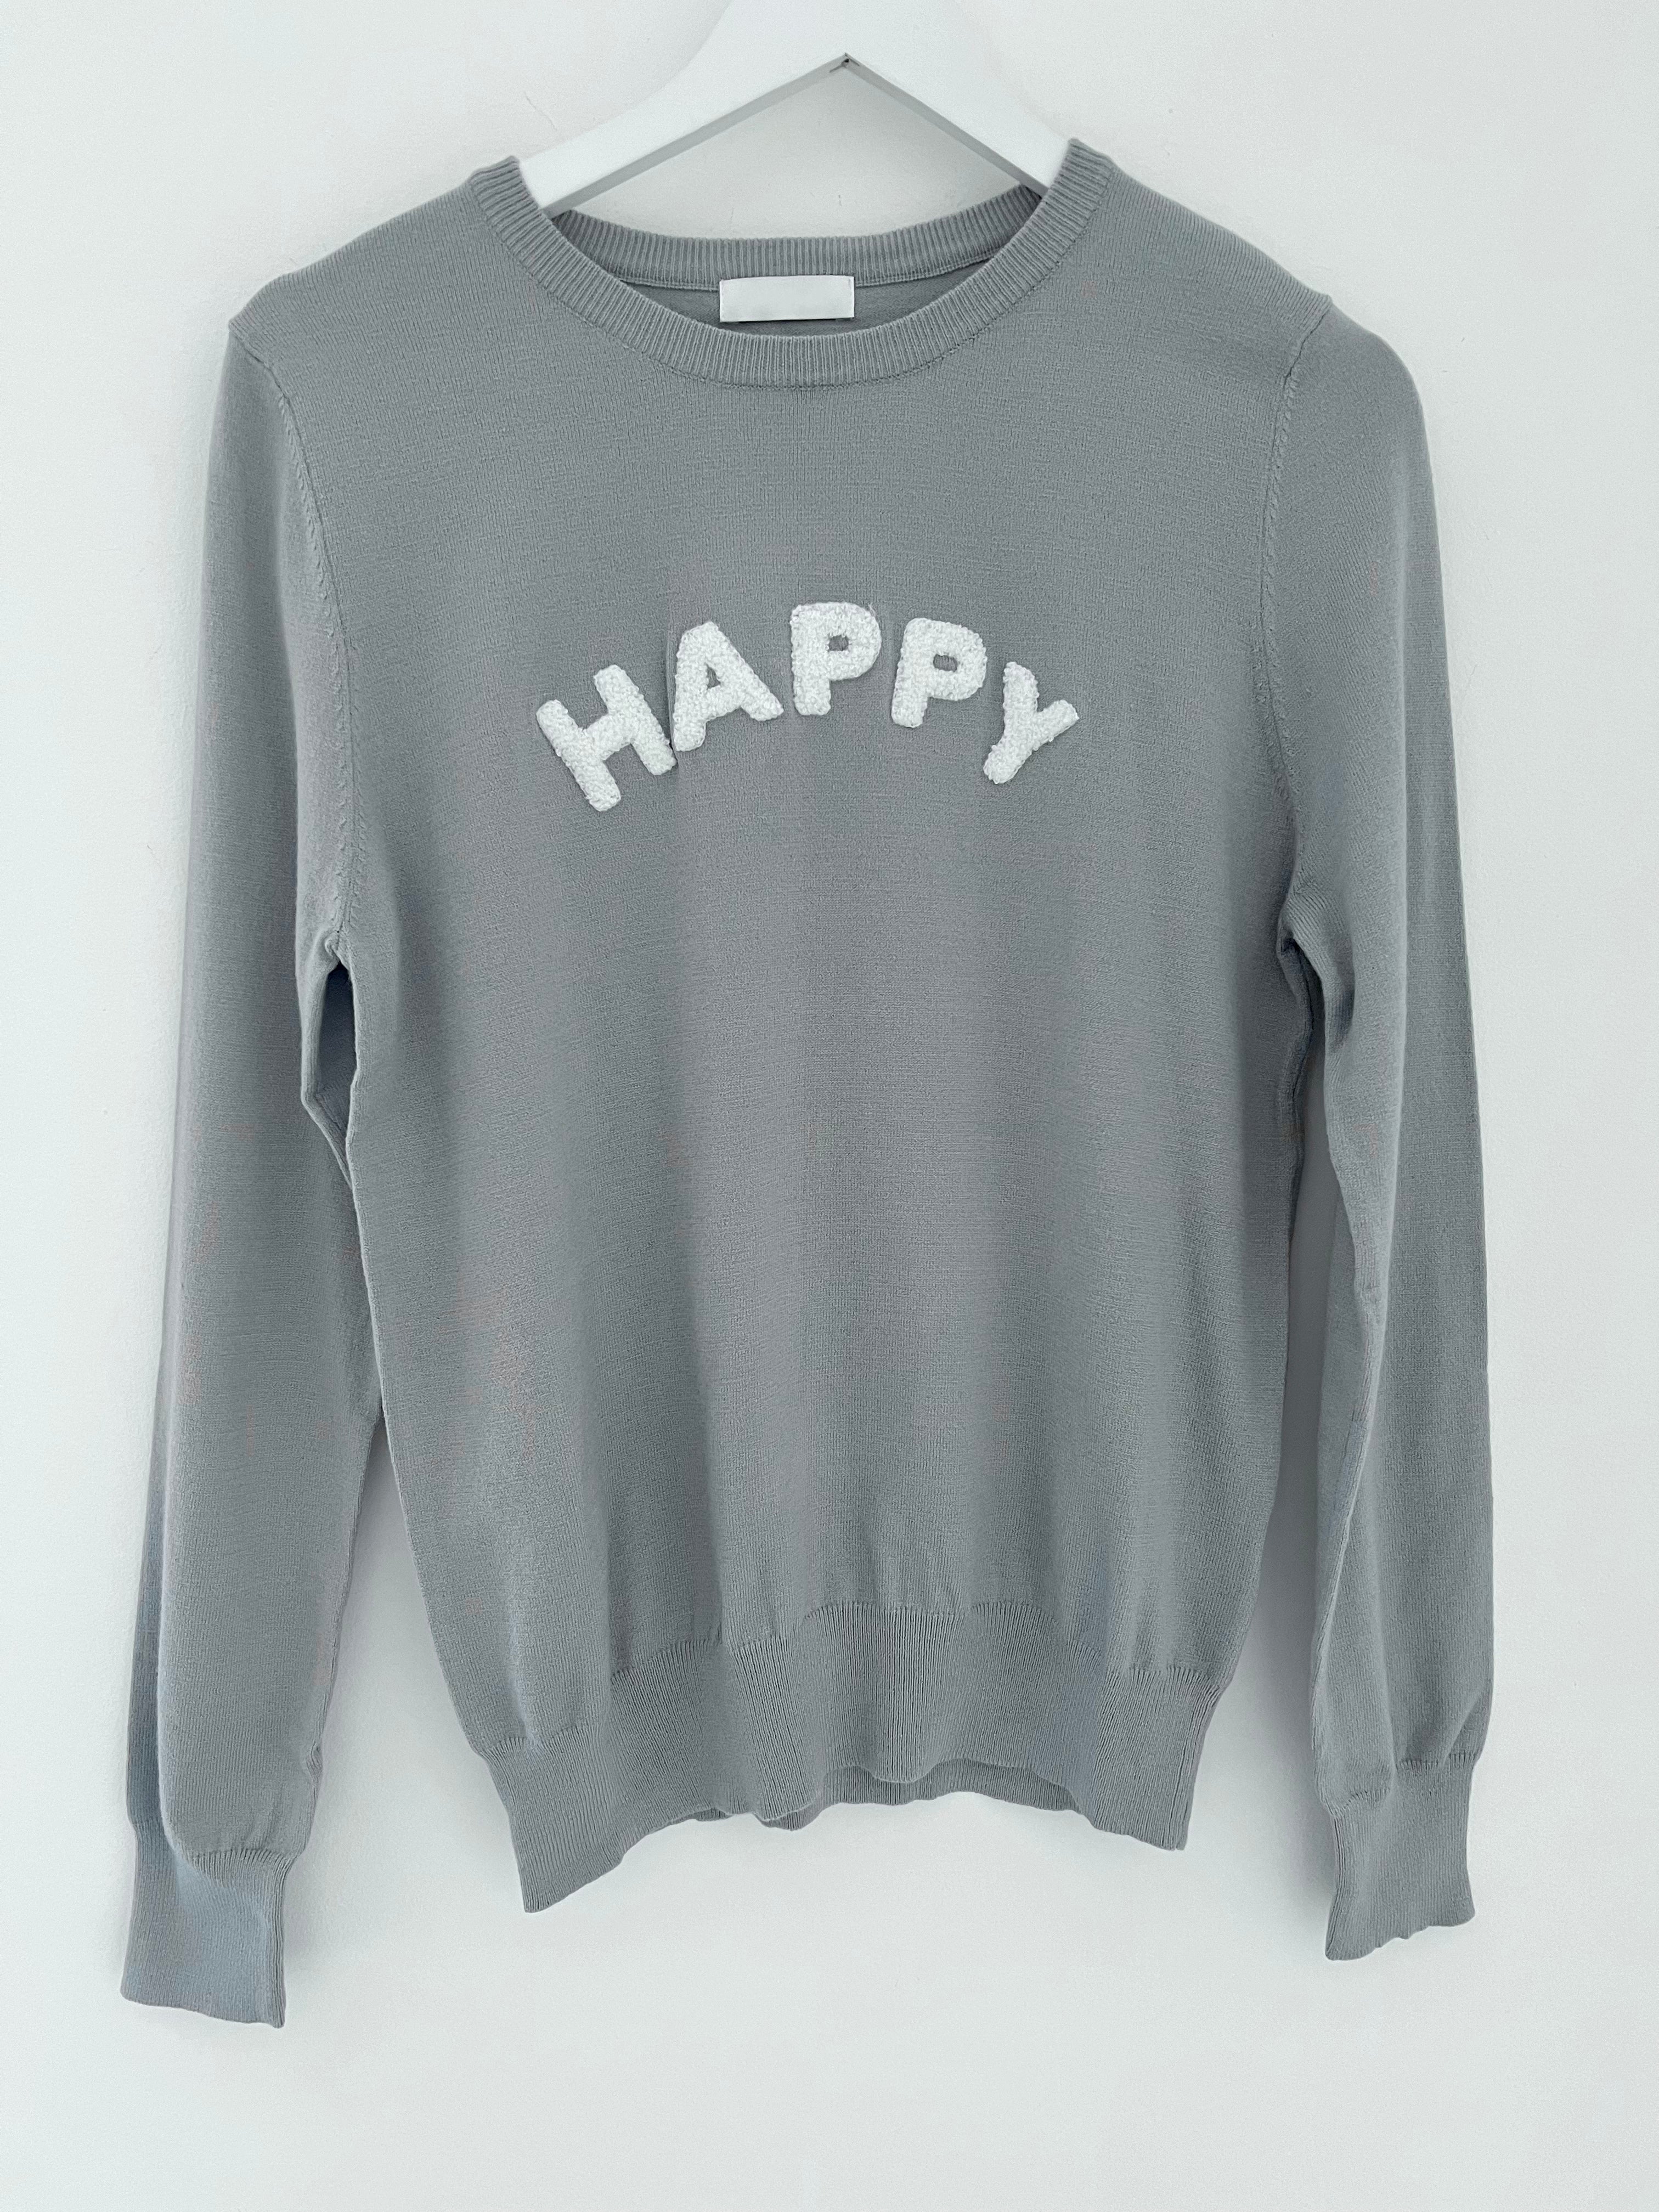 Happy Jumper in Grey